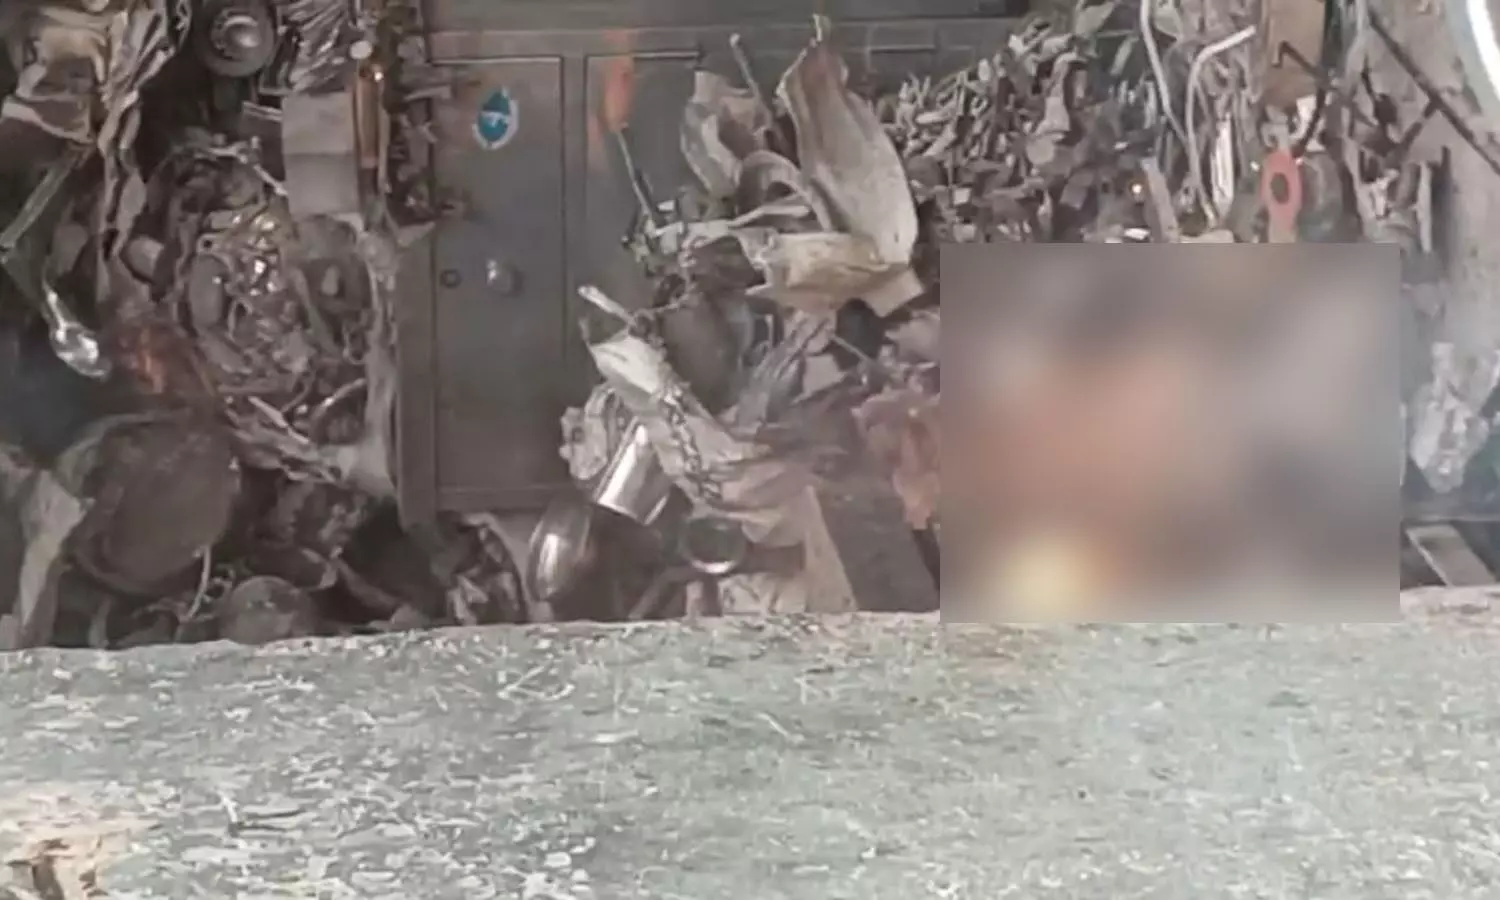 Scrapyard worker injured in explosion in Bholakpur